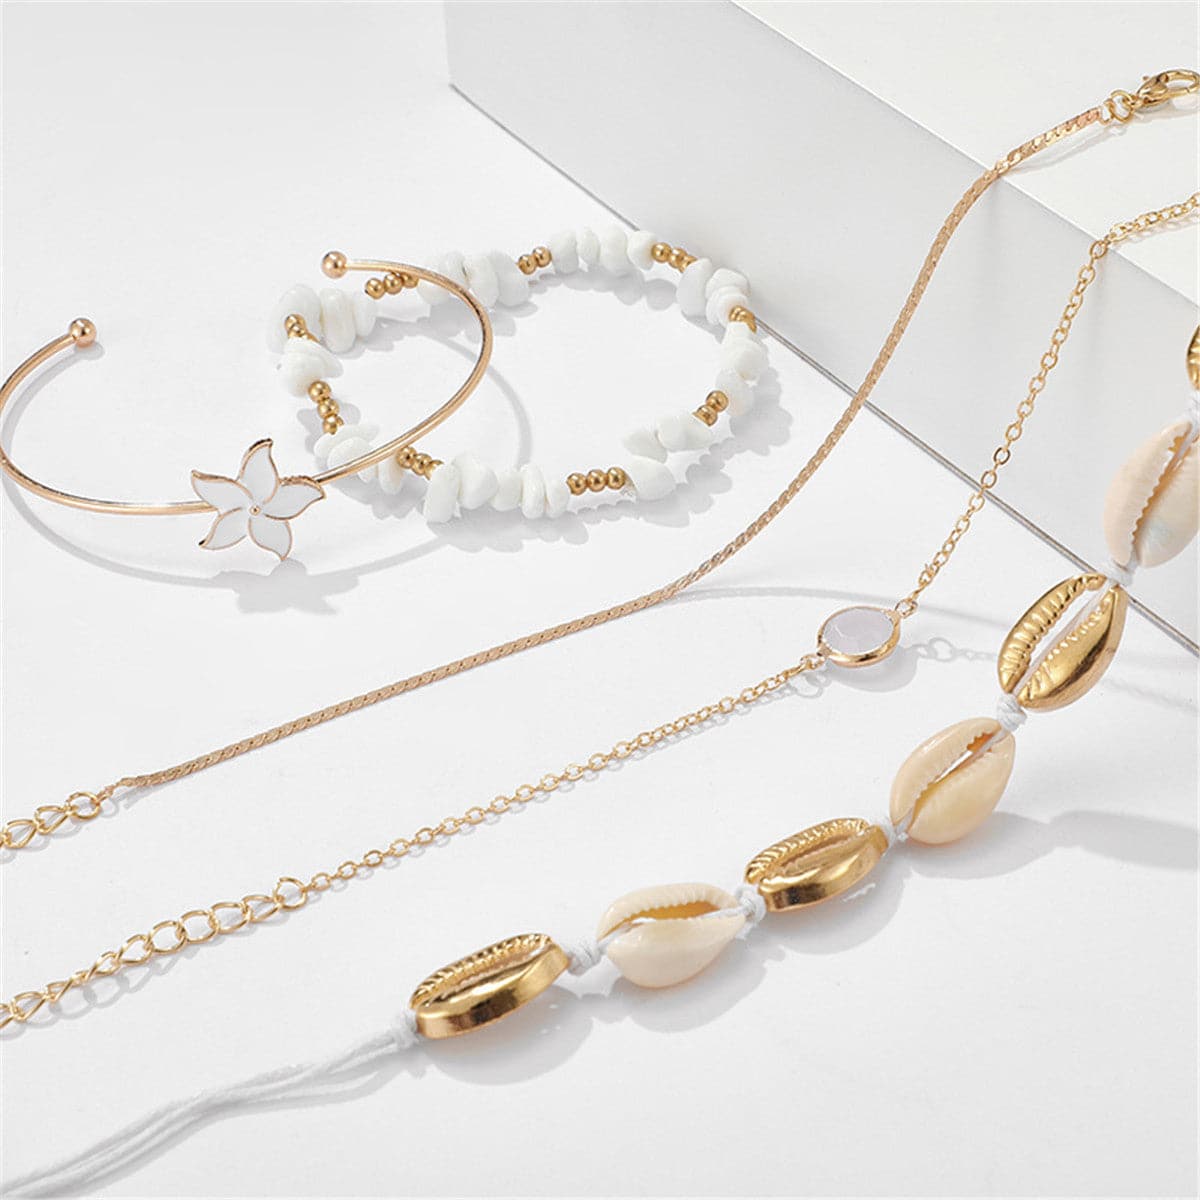 White Shell & 18K Gold-Plated Charm Bracelet Set